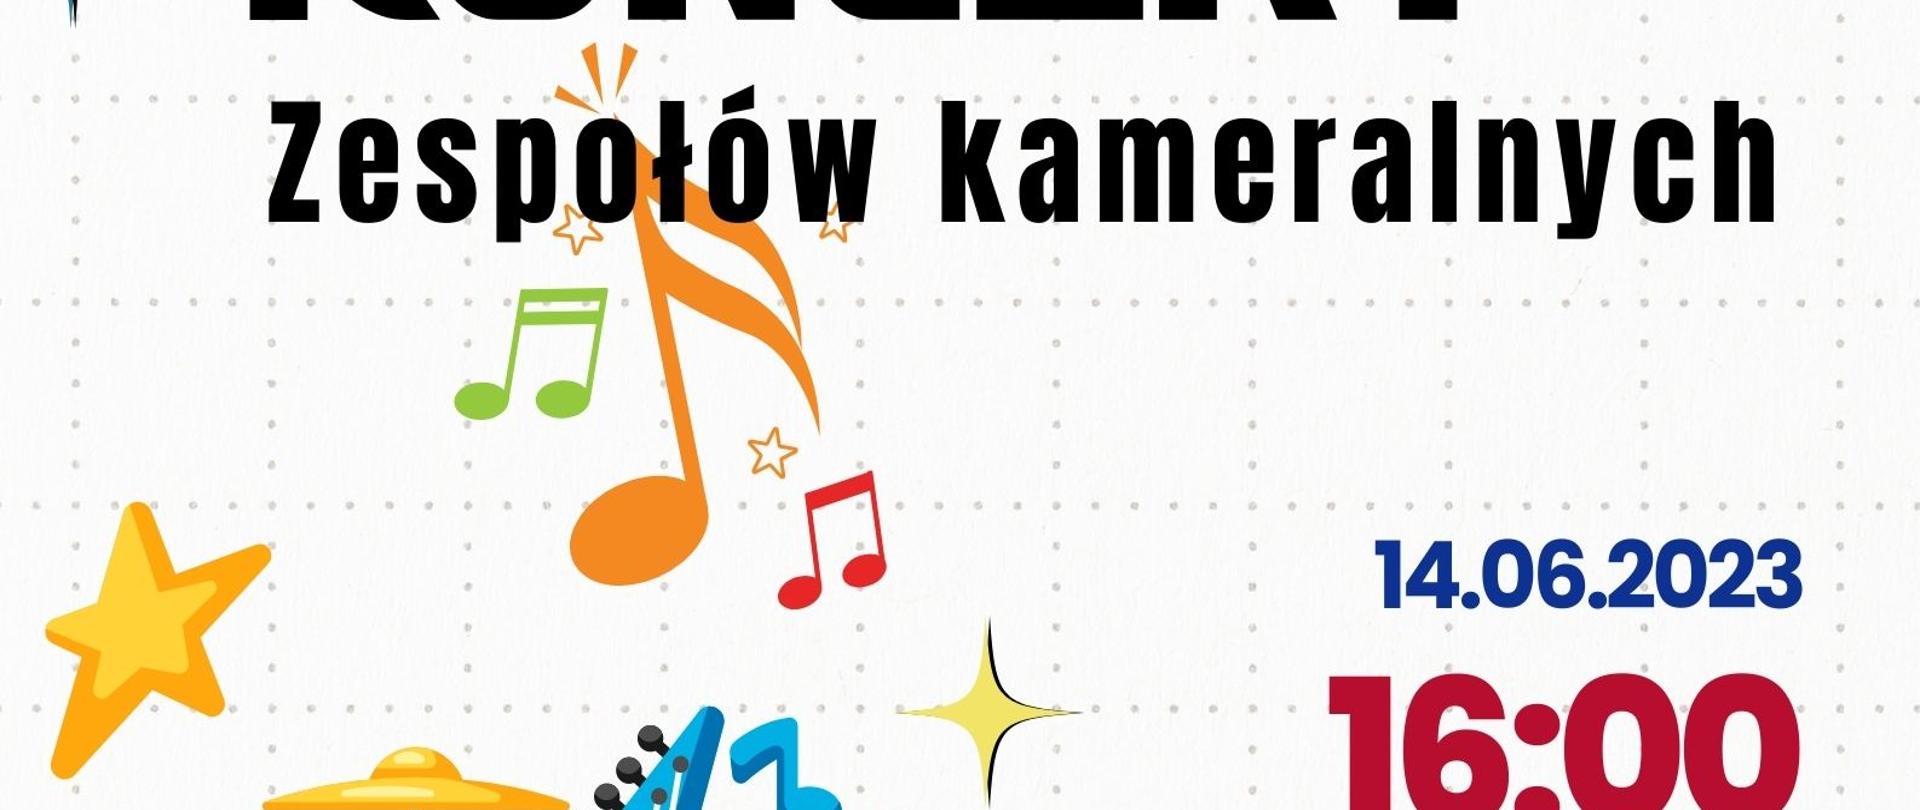 Plakat informacyjny dotyczący Koncertu zespołów kameralnych, odbywający się w dniu 14.06.2023 r. o godz. 16.00. w auli Szkoły Muzycznej w Jastrzębiu-Zdroju. Wstęp wolny. 